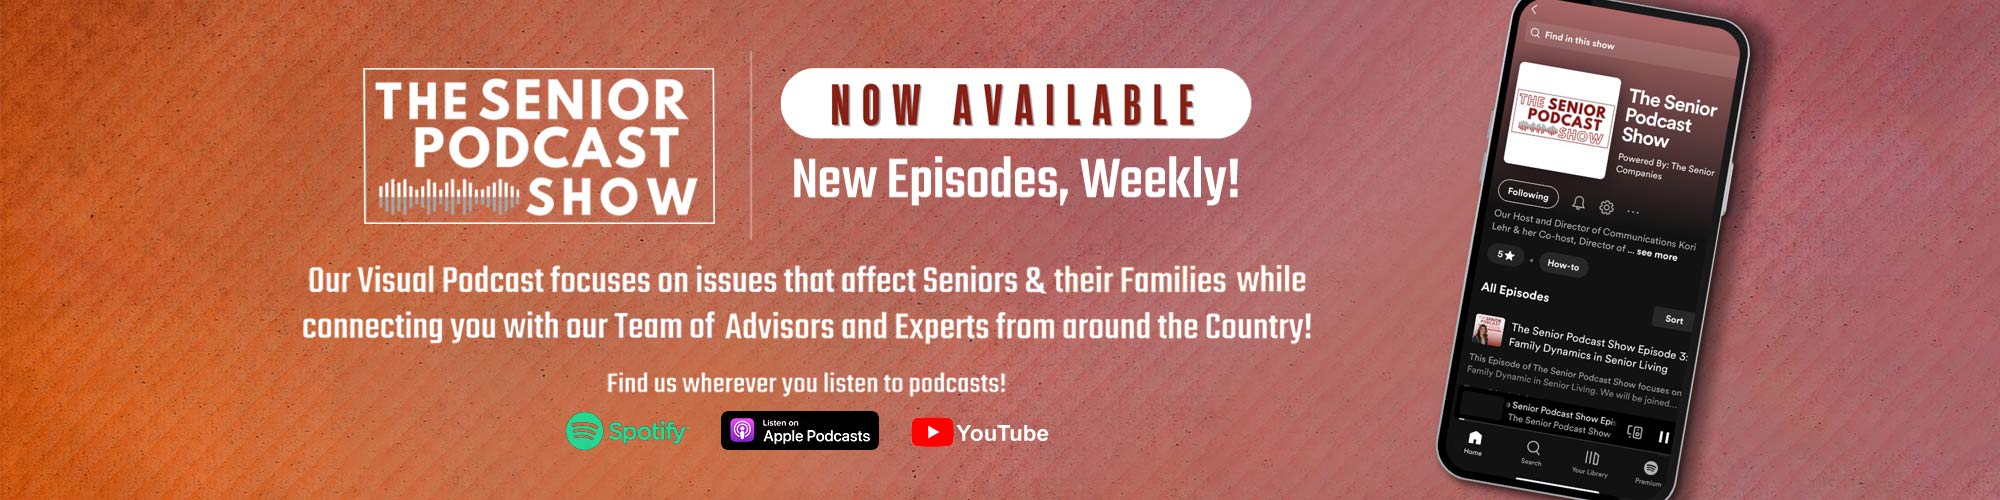 The Senior Podcast Show